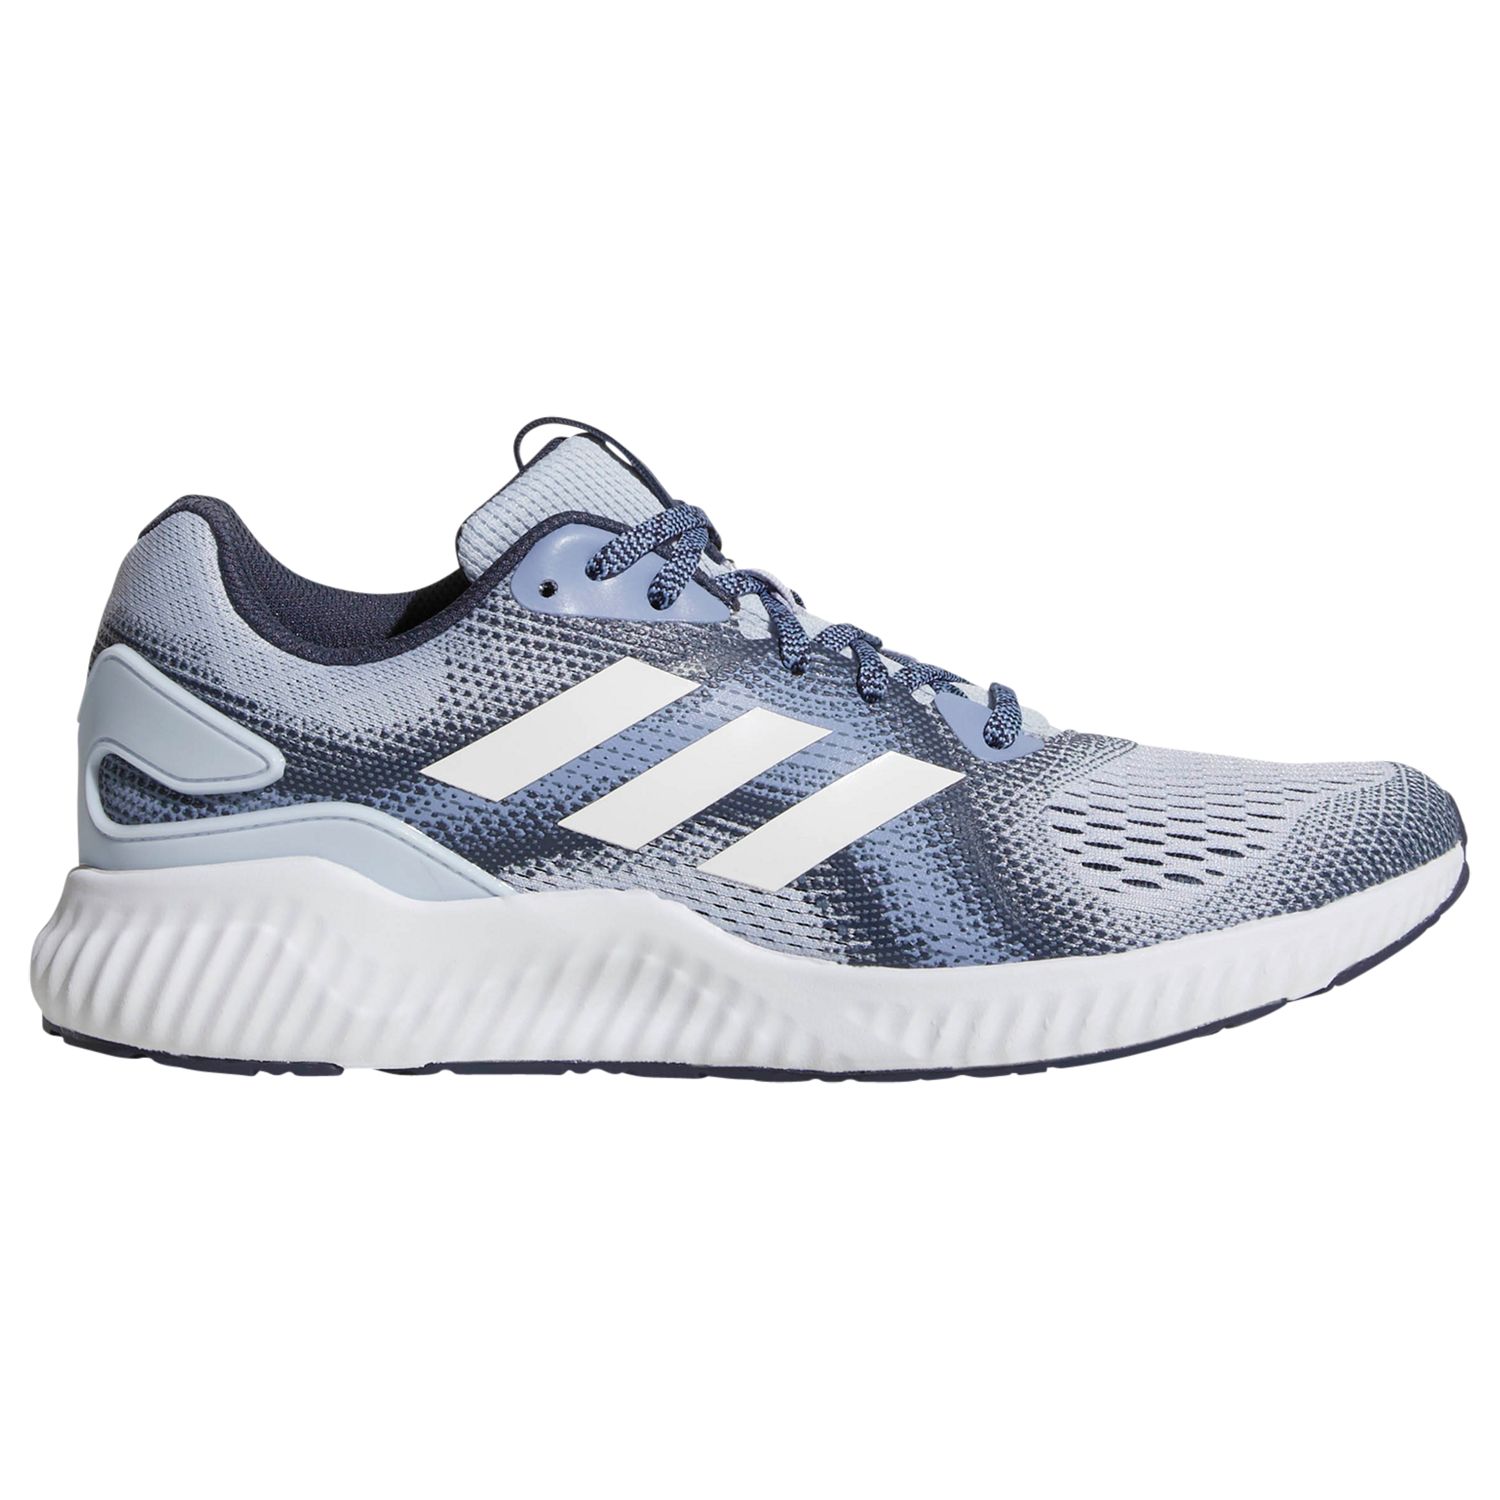 adidas Aerobounce Women's Running Shoes, Blue, 7